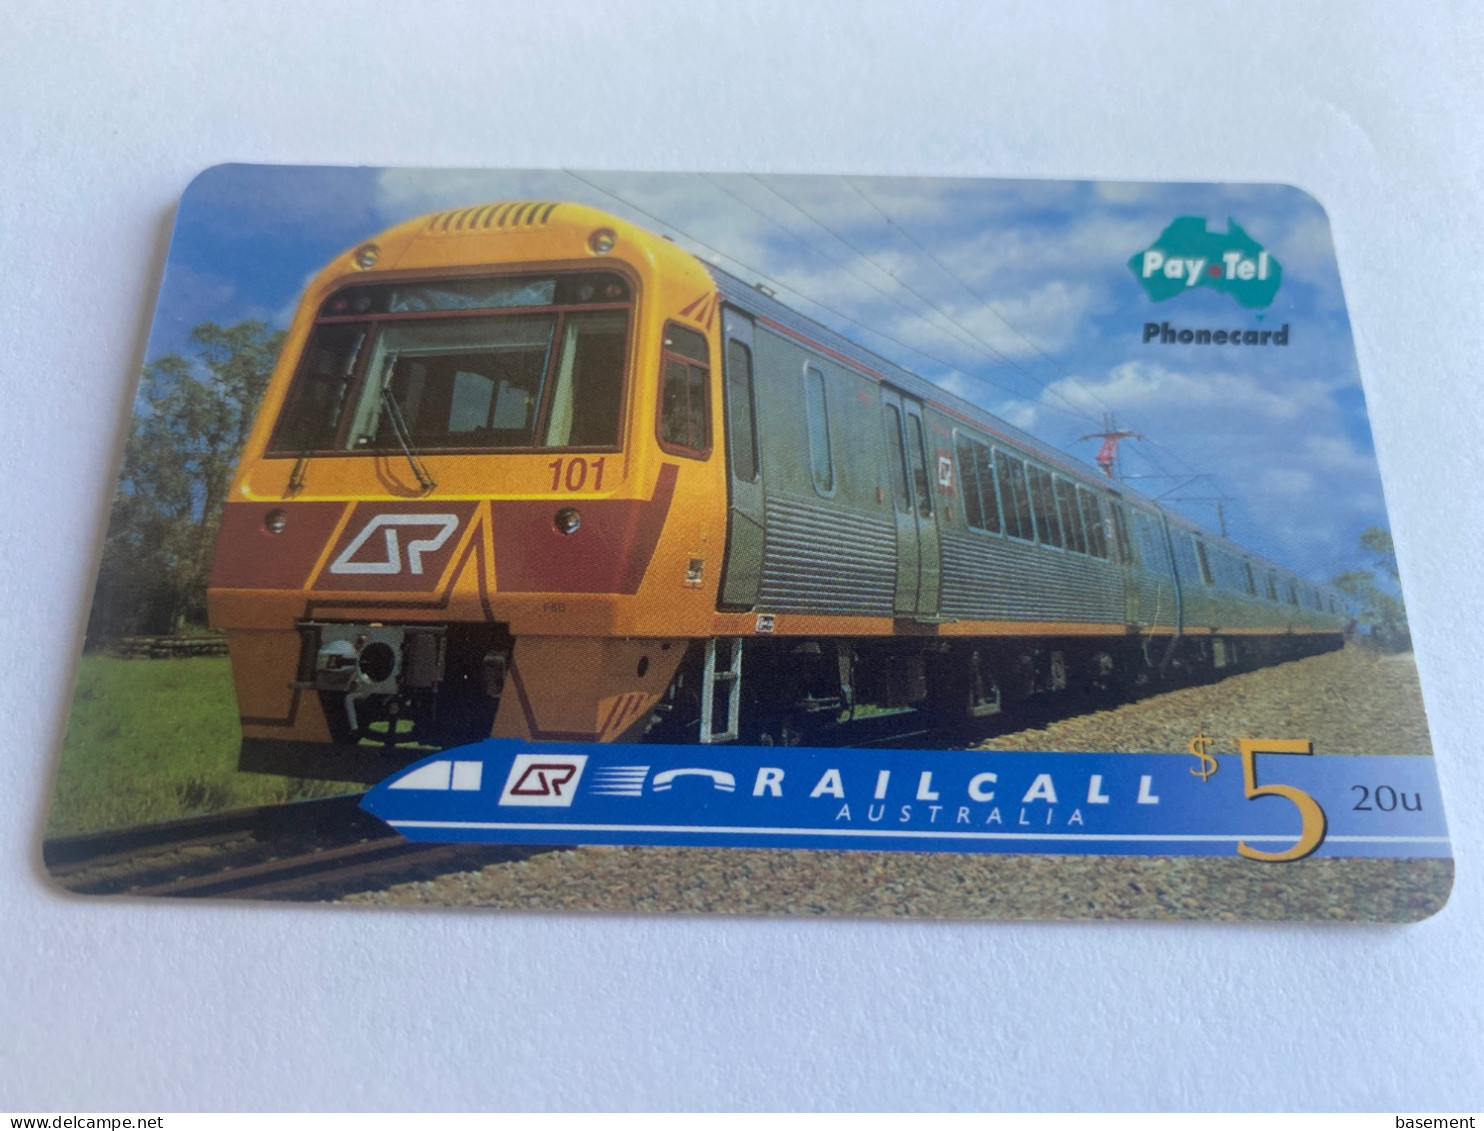 1:042 - Australia Pay Tel RailCall Train - Australien